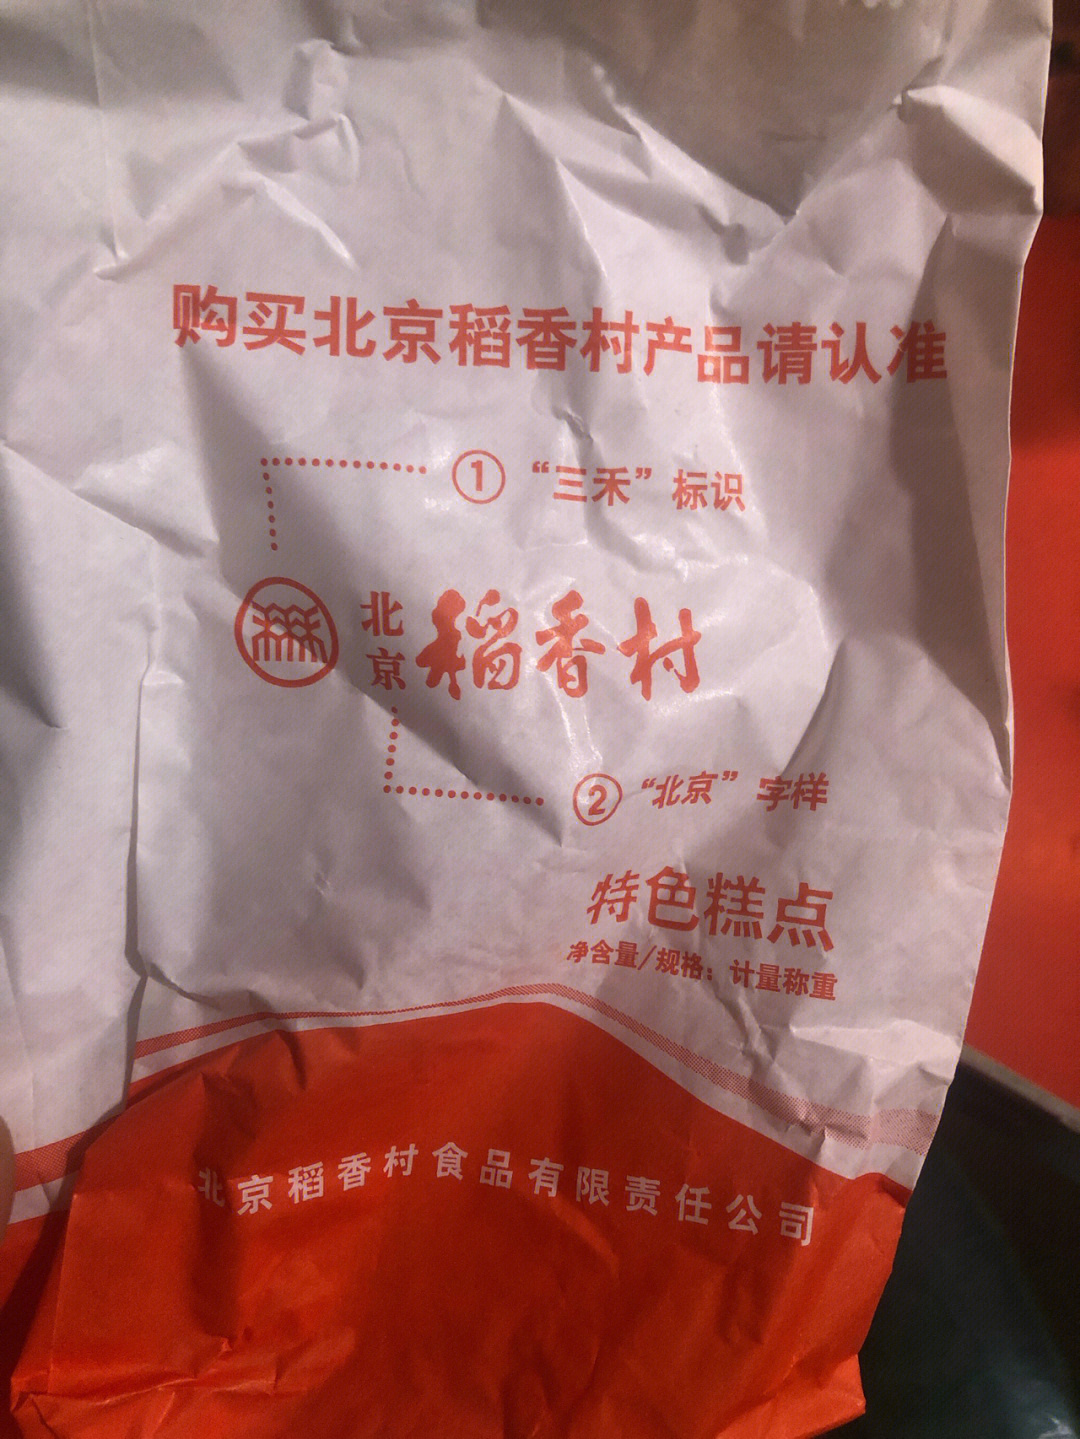 找到真的北京稻香村的店 牌匾上要有三禾标志和北京2作为一个喜欢红枣